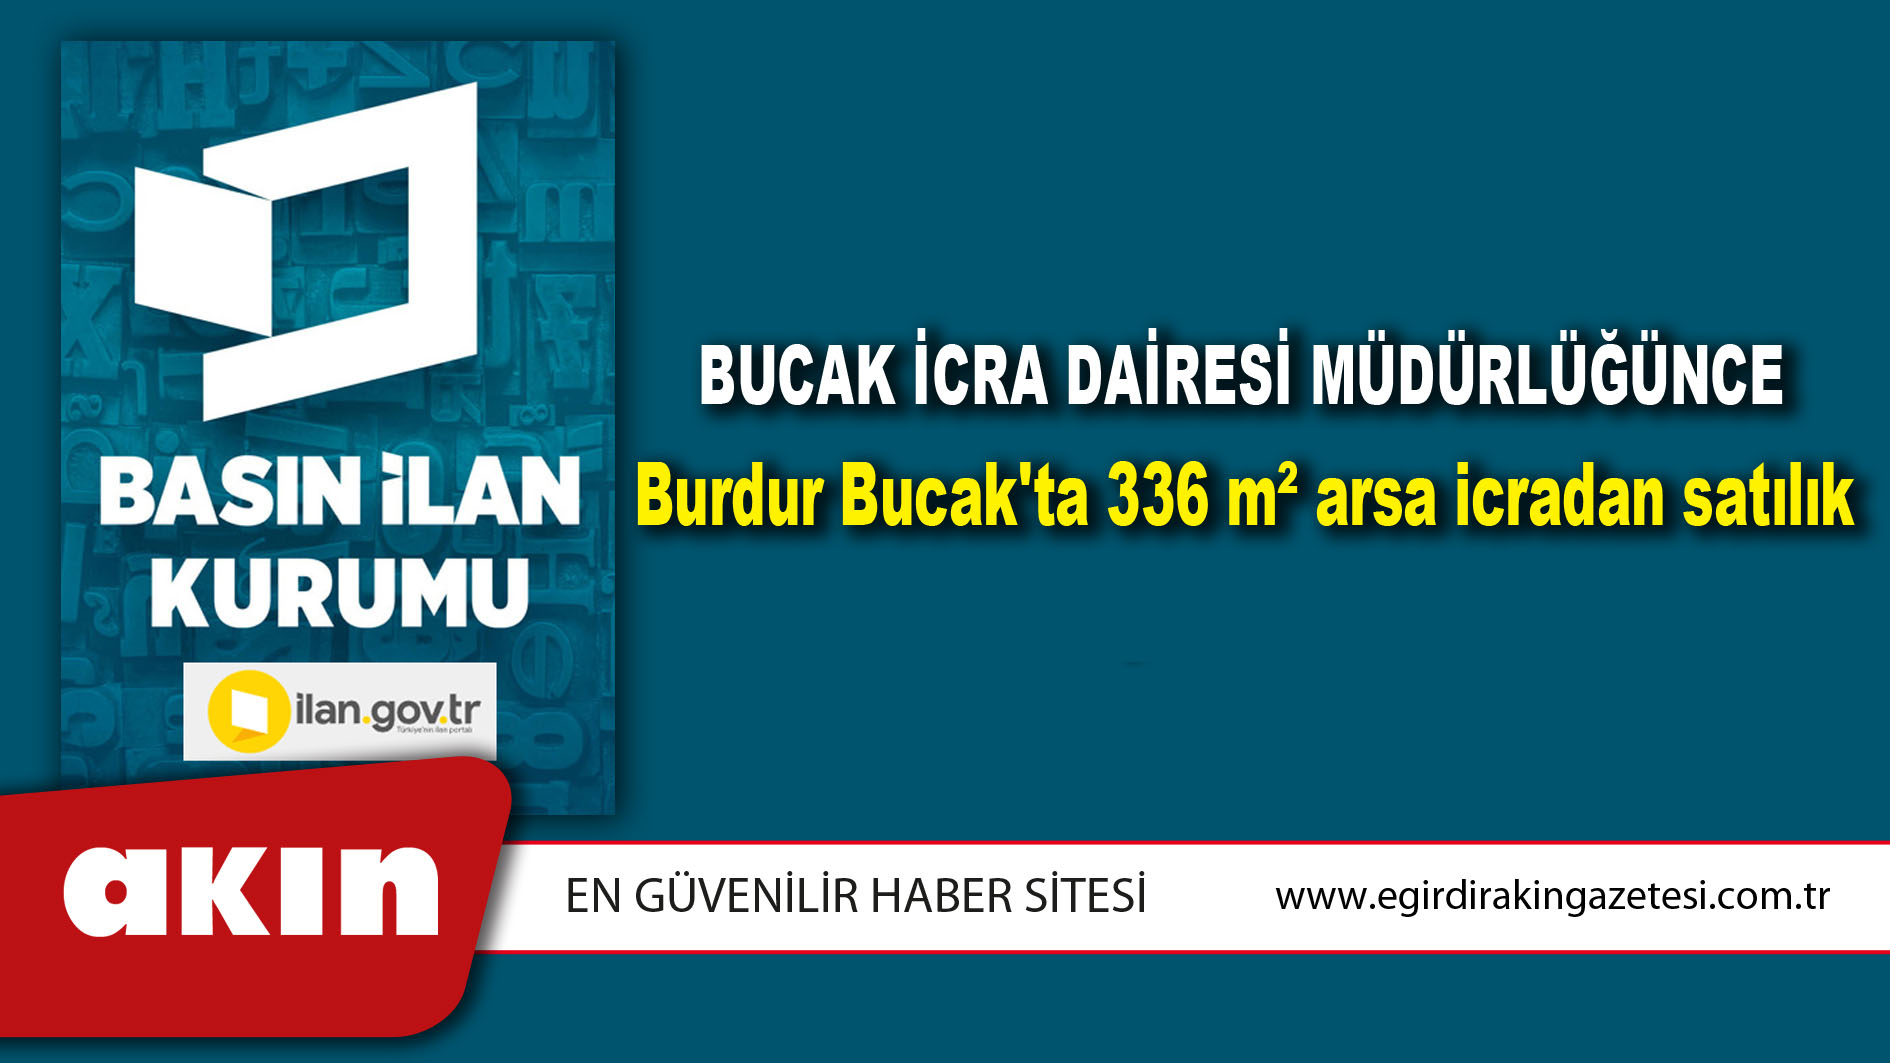 Bucak İcra Dairesi Müdürlüğünce Burdur Bucak'ta 336 m² arsa icradan satılık